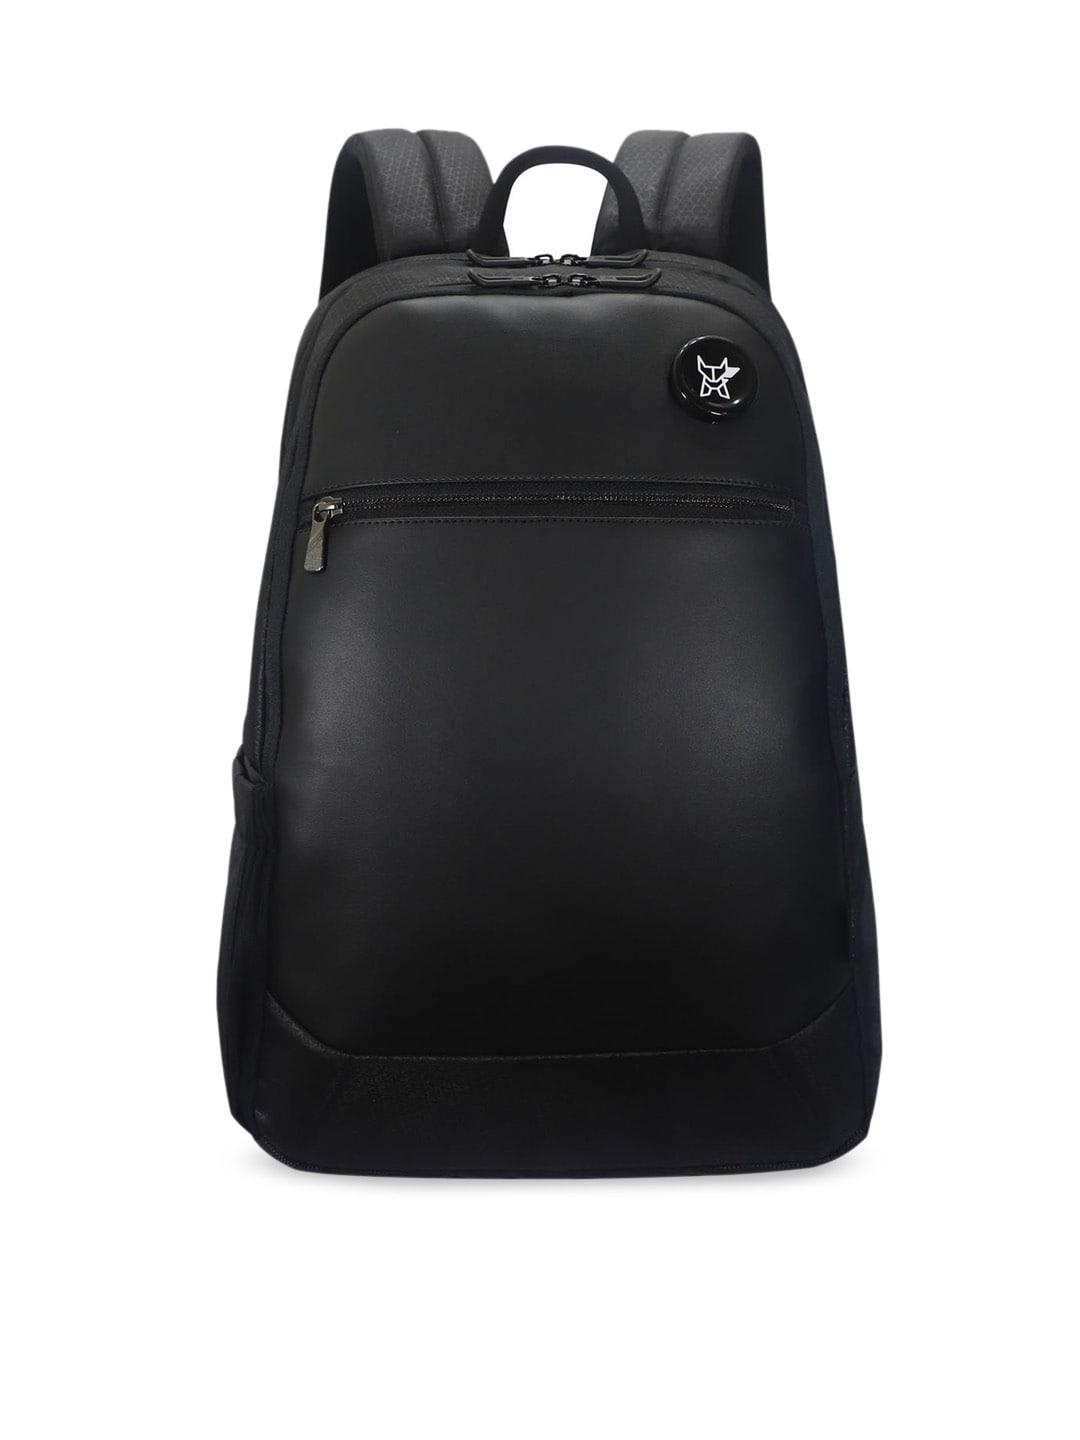 arctic fox unisex black solid laptop bag